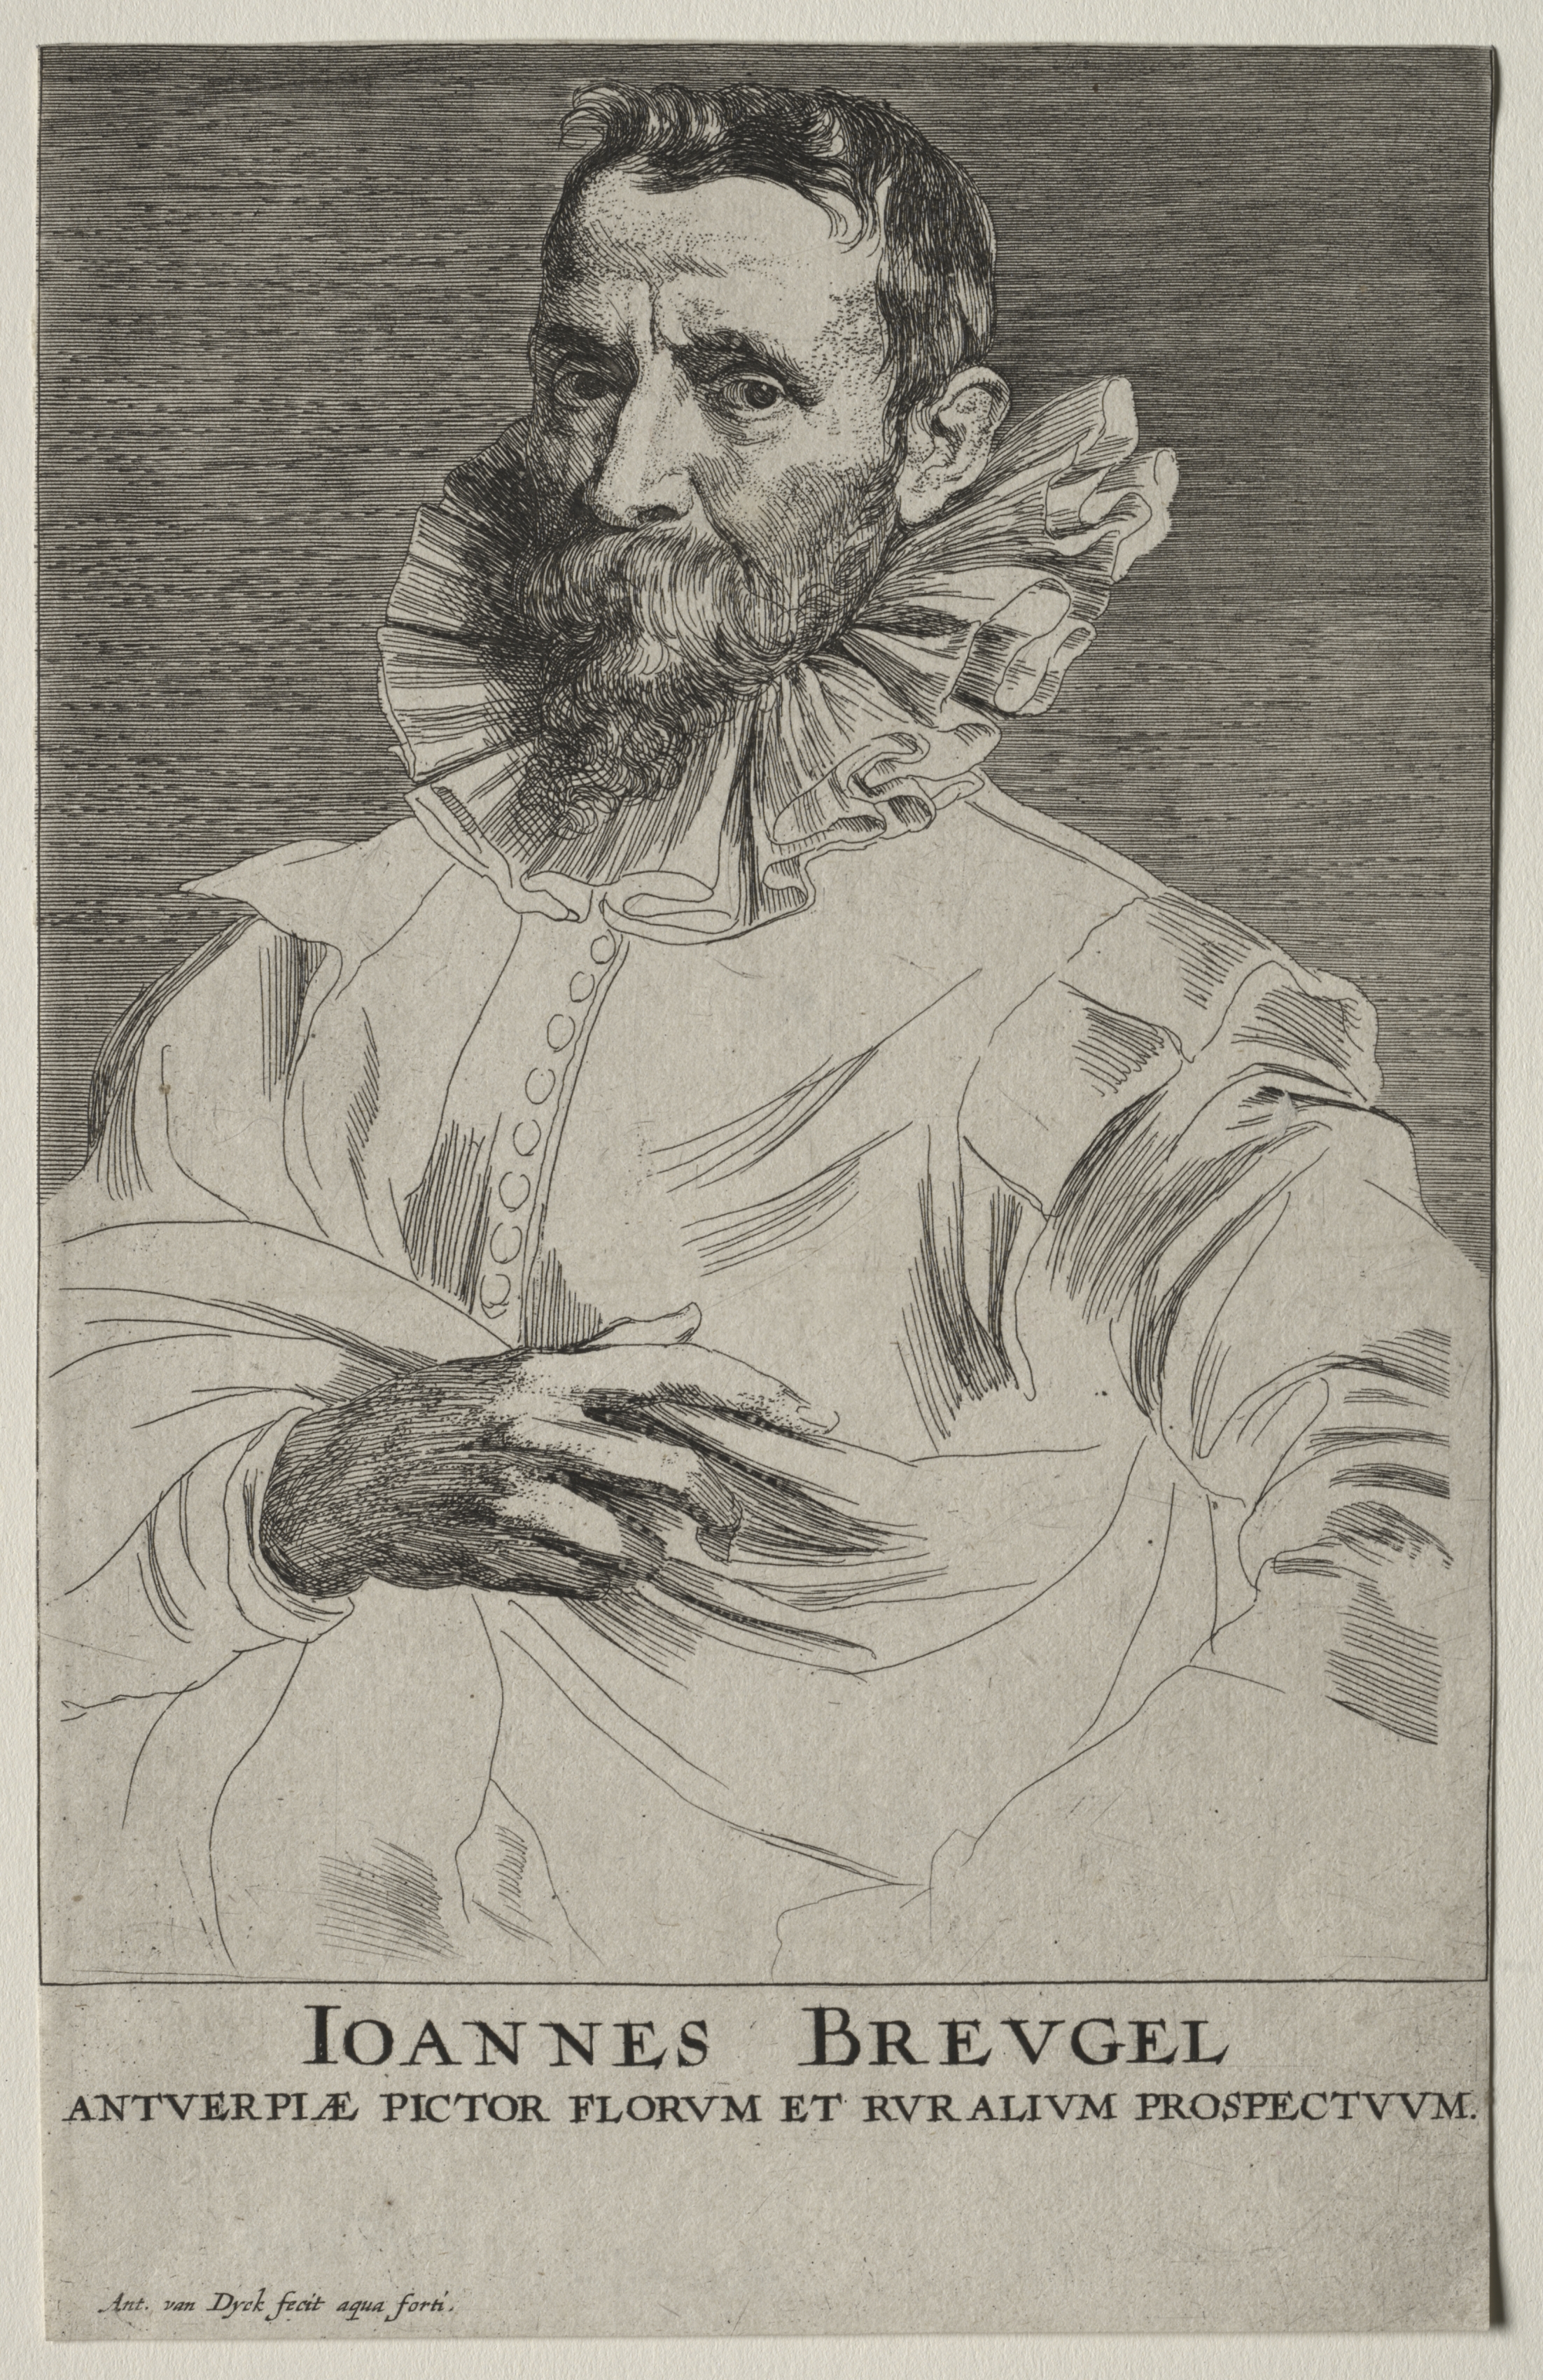 Jan Brueghel